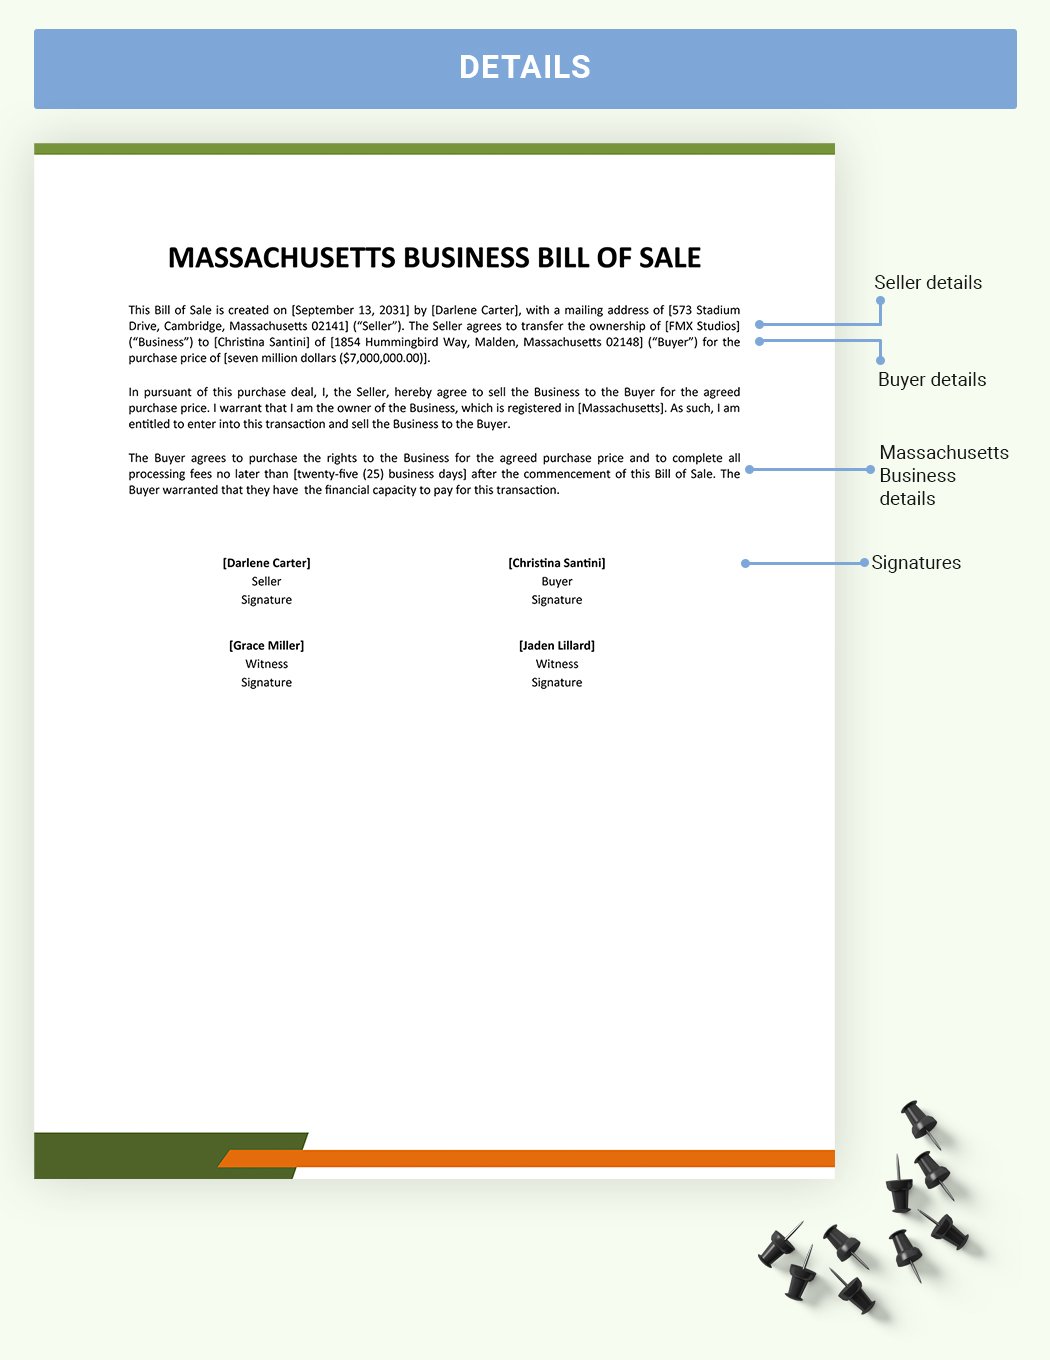 Massachusetts Business Bill Of Sale Template